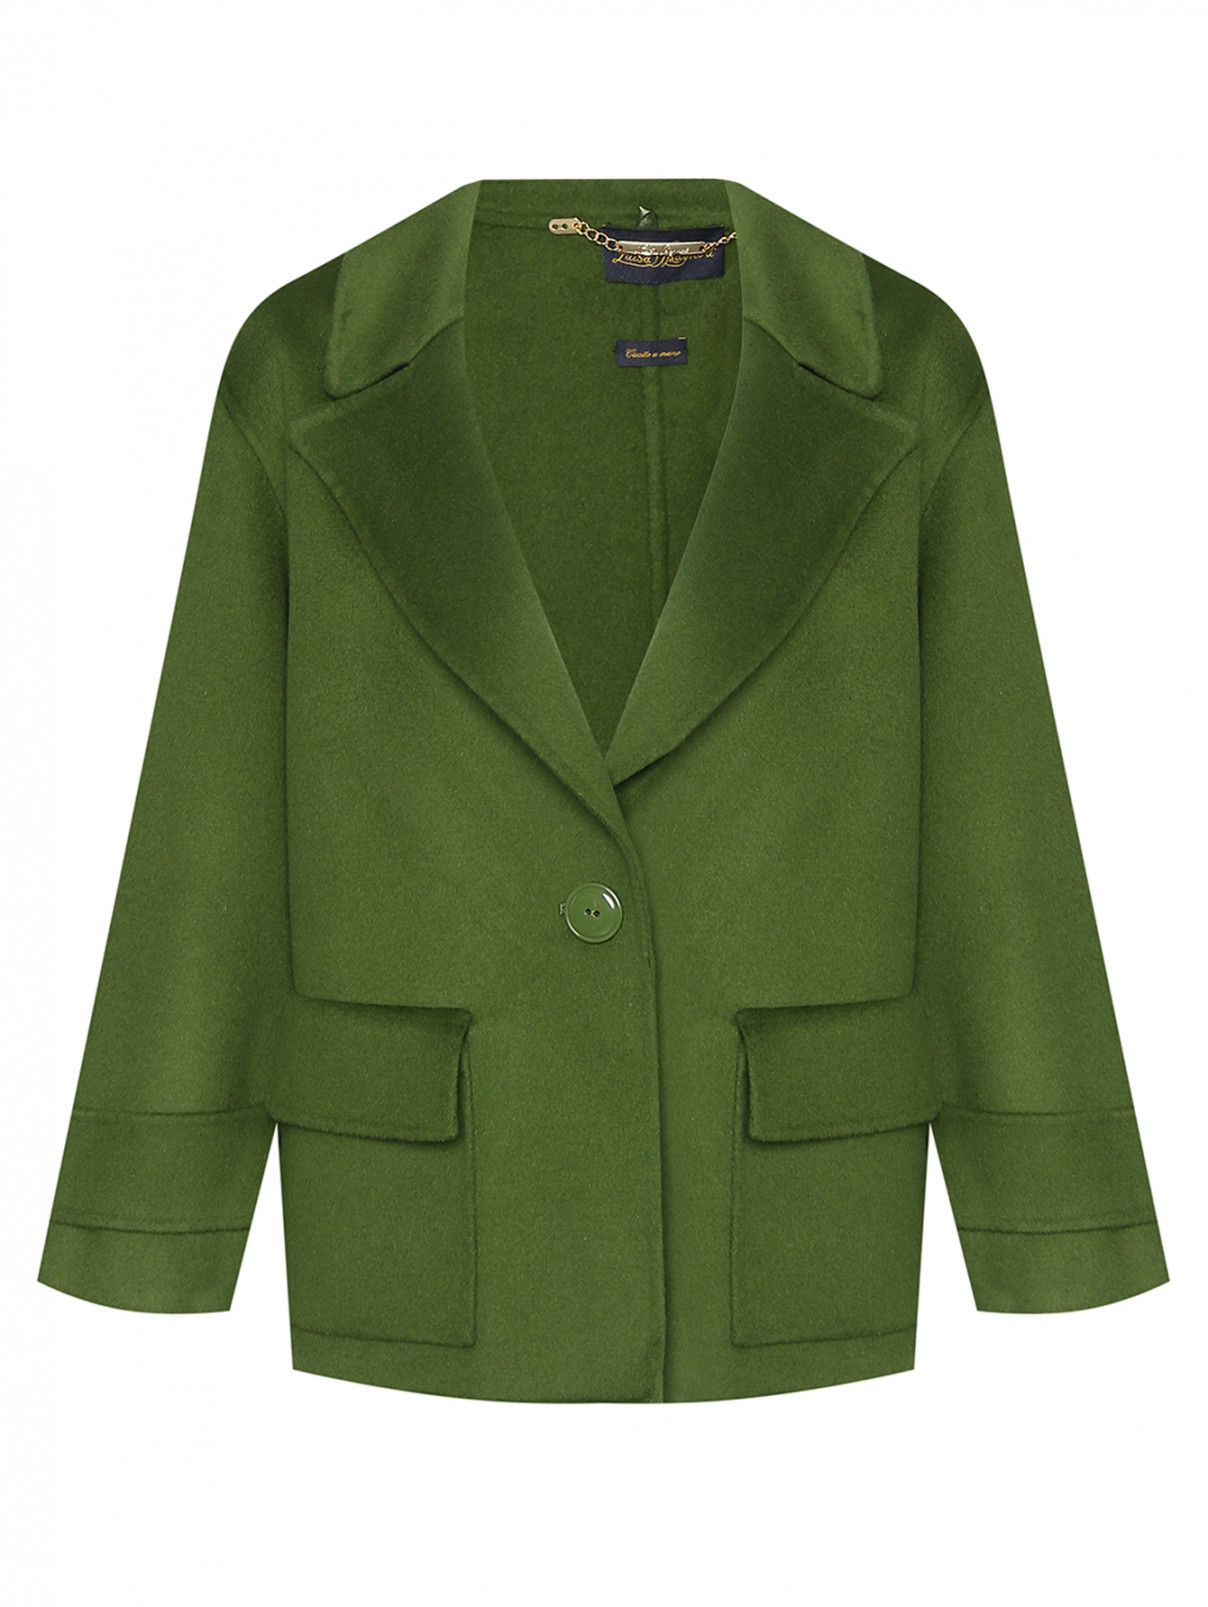 Полупальто из шерсти с карманами Luisa Spagnoli  –  Общий вид  – Цвет:  Зеленый